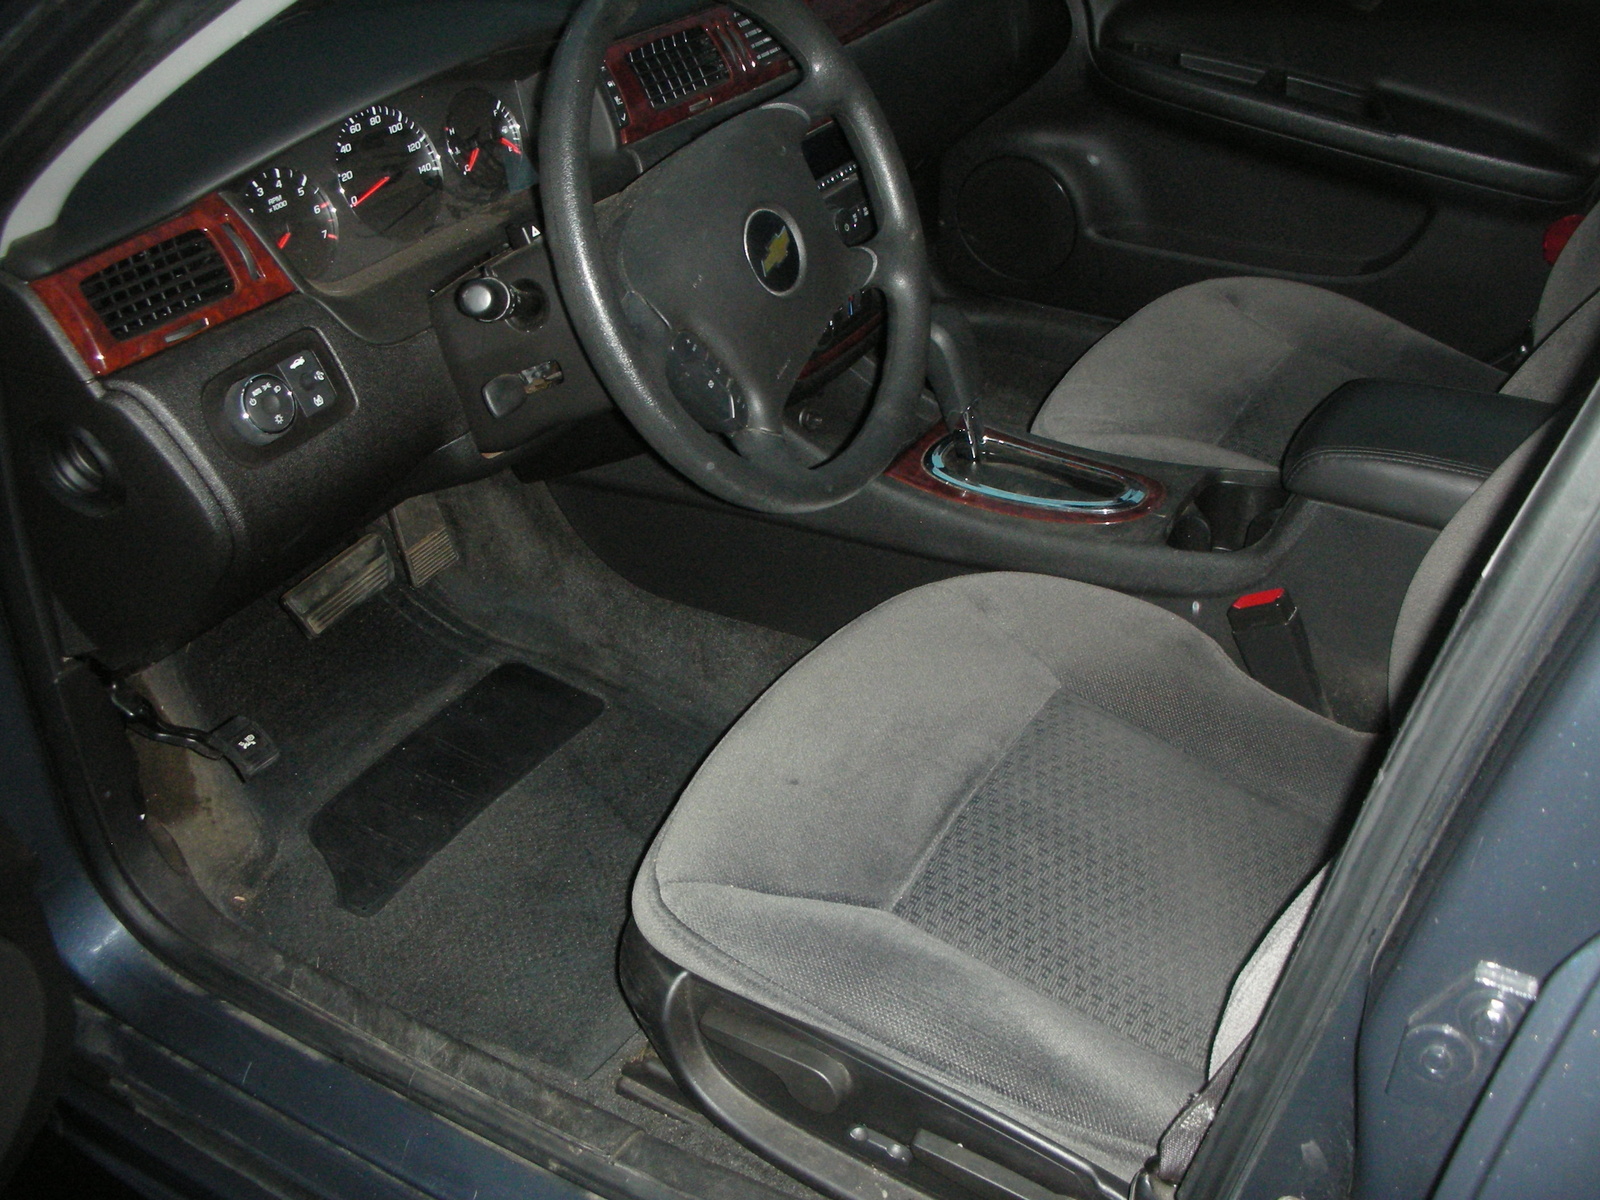 2009 Chevrolet Impala - Pictures - CarGurus